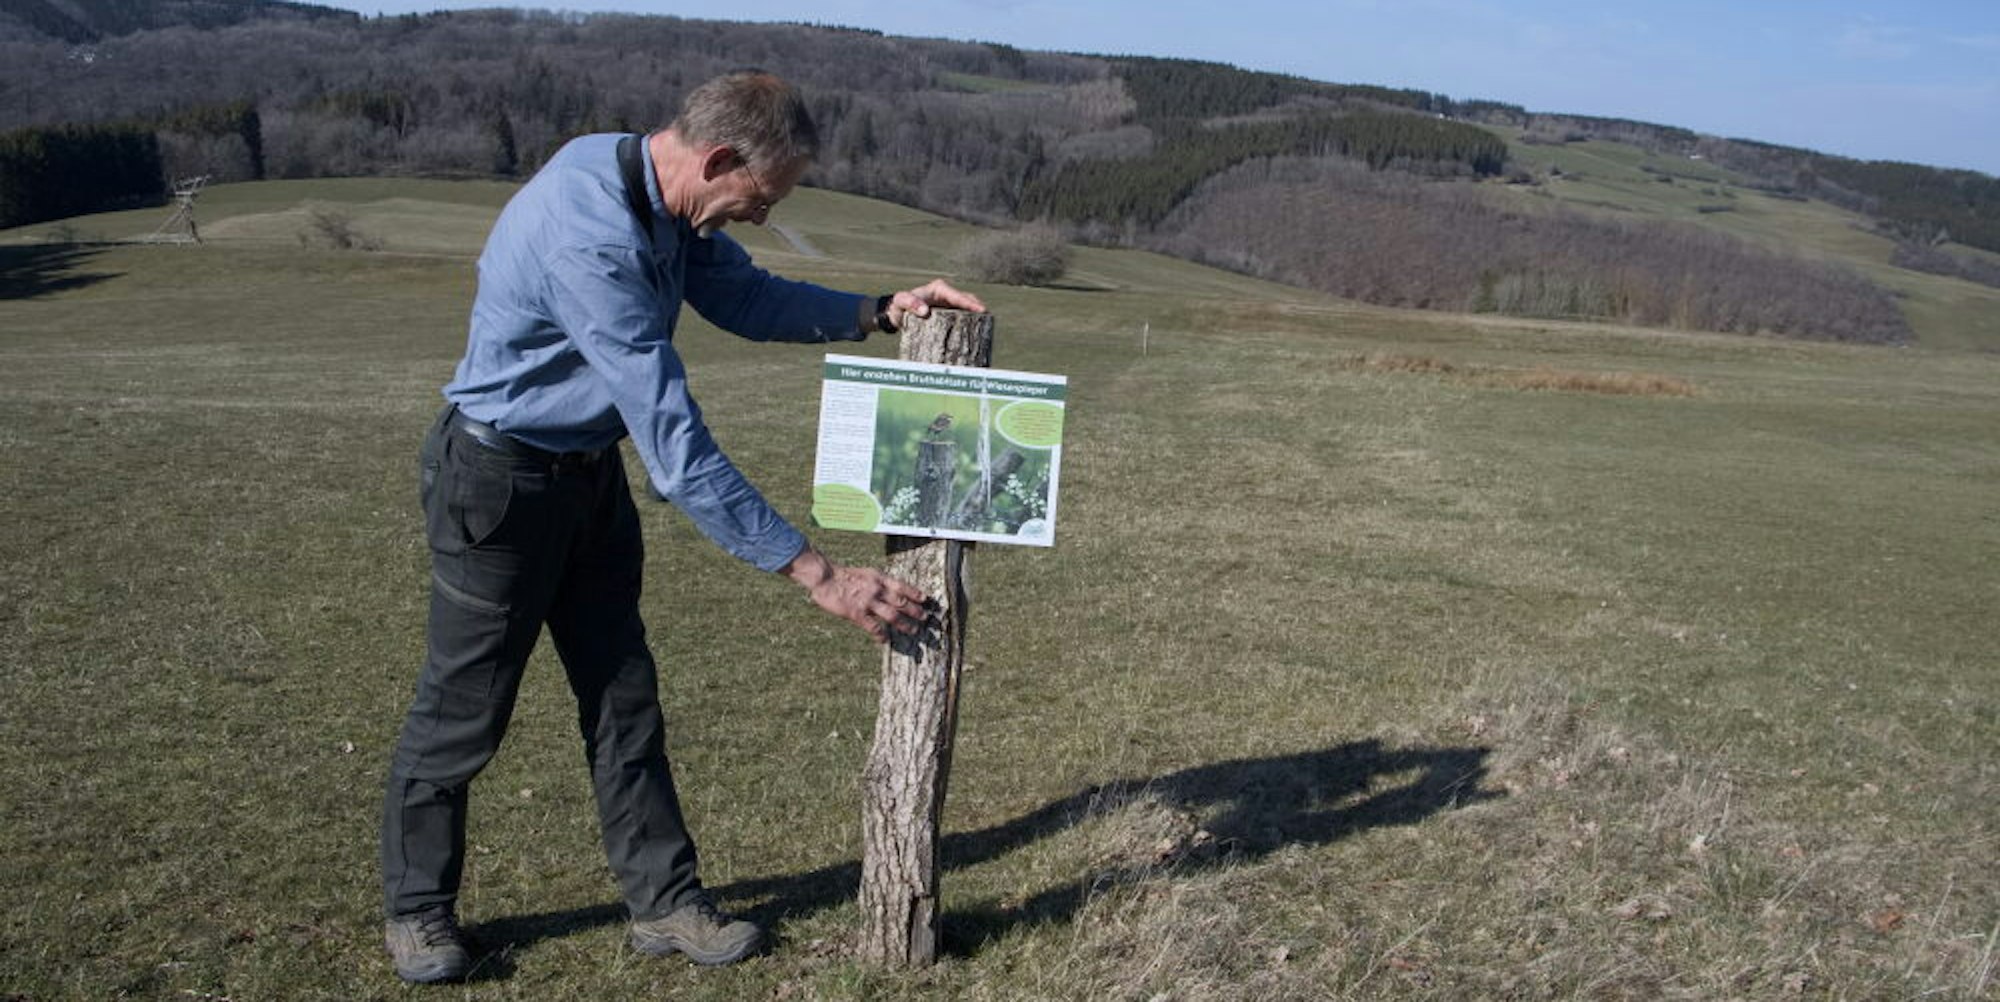 Schilder zum Schutz des Wiesenpiepers stellt Jan-Roeland Vos, Ornithologe der Biologischen Station, im Ländchen auf. Bestimmte Wegstreifen auf den Wiesen bleiben ungemäht und sollen möglichst nicht betreten werden.